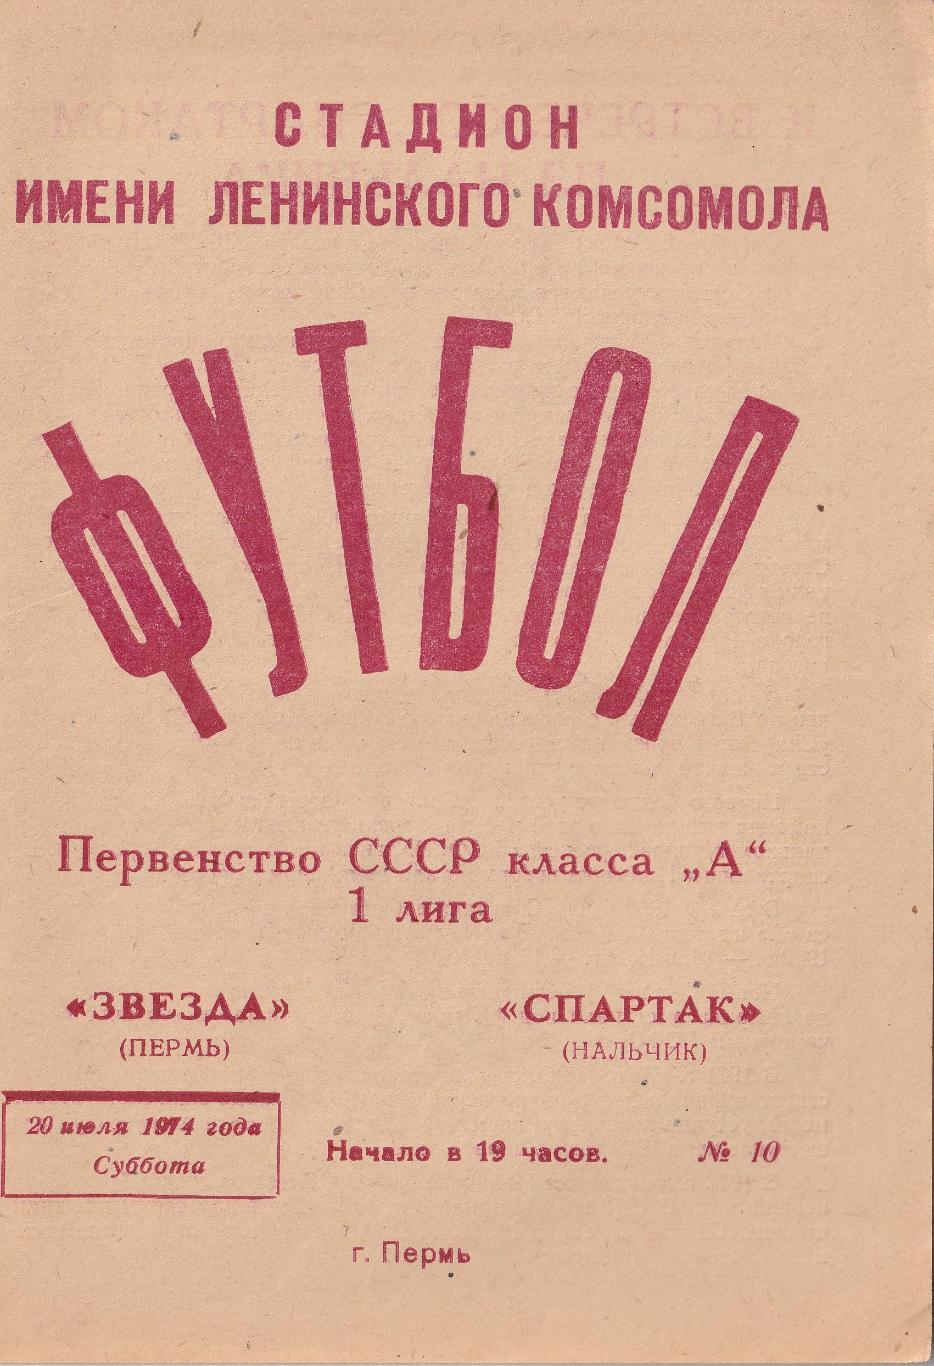 Звезда Пермь - Спартак Нальчик 20.07.1974